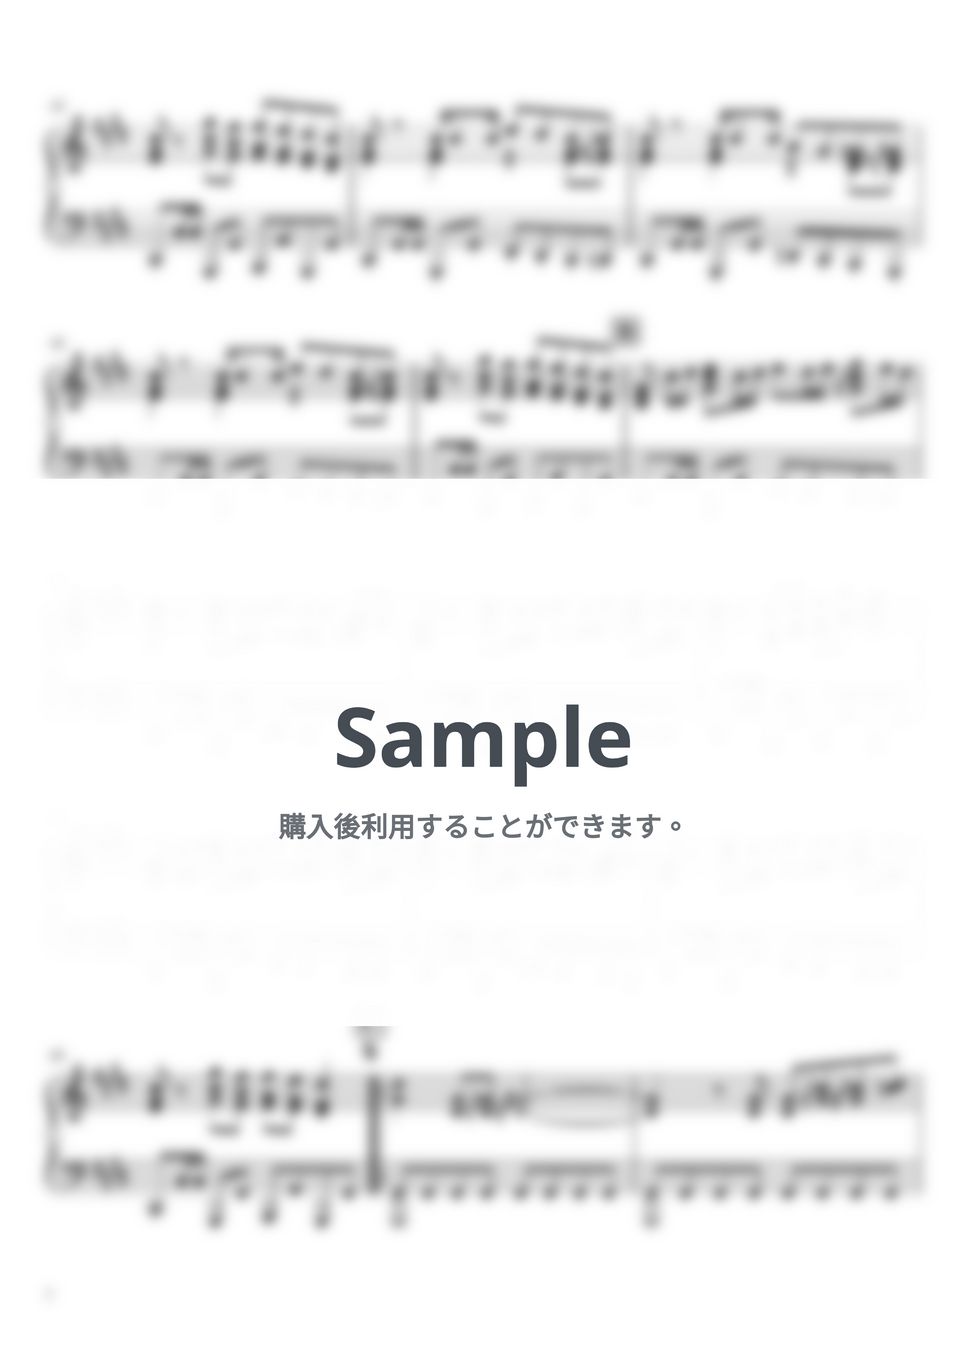 ナナホシ管弦楽団 - 失楽ペトリ (ピアノソロ / 上級) by SuperMomoFactory